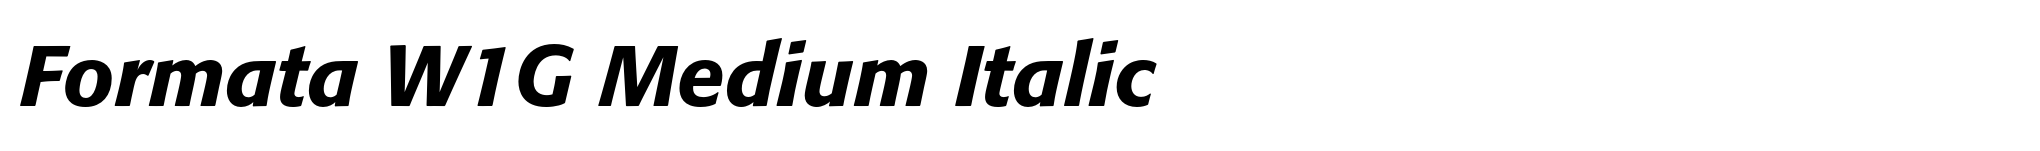 Formata W1G Medium Italic image